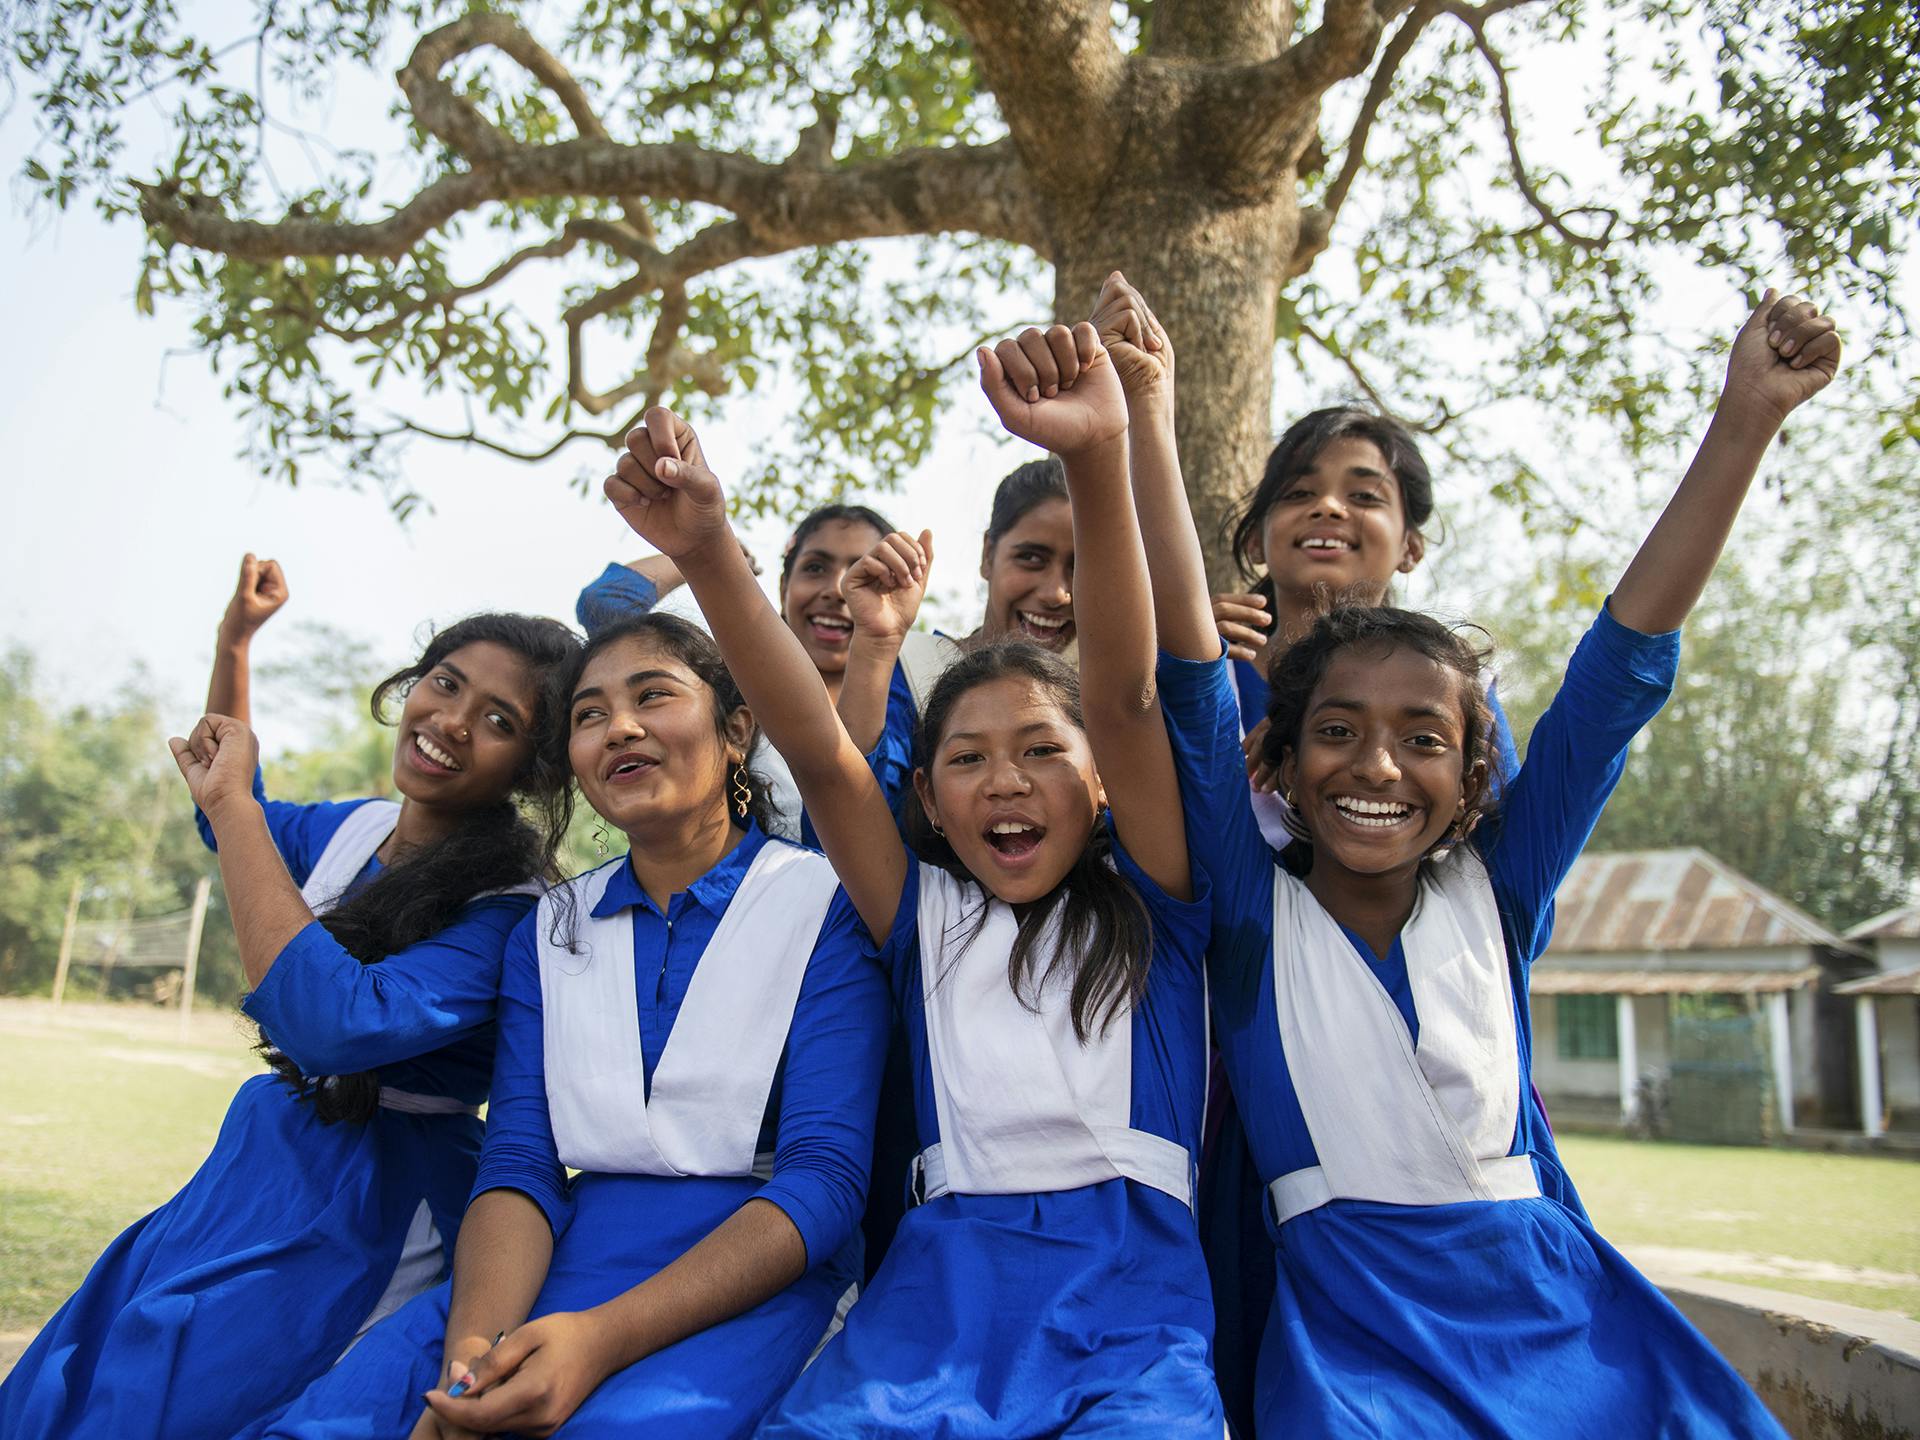 En grupp av leende och skrattande flickor sitter intill ett träd. De är klädda i likadana blåa skoluniformer och sträcker upp händerna i luften.